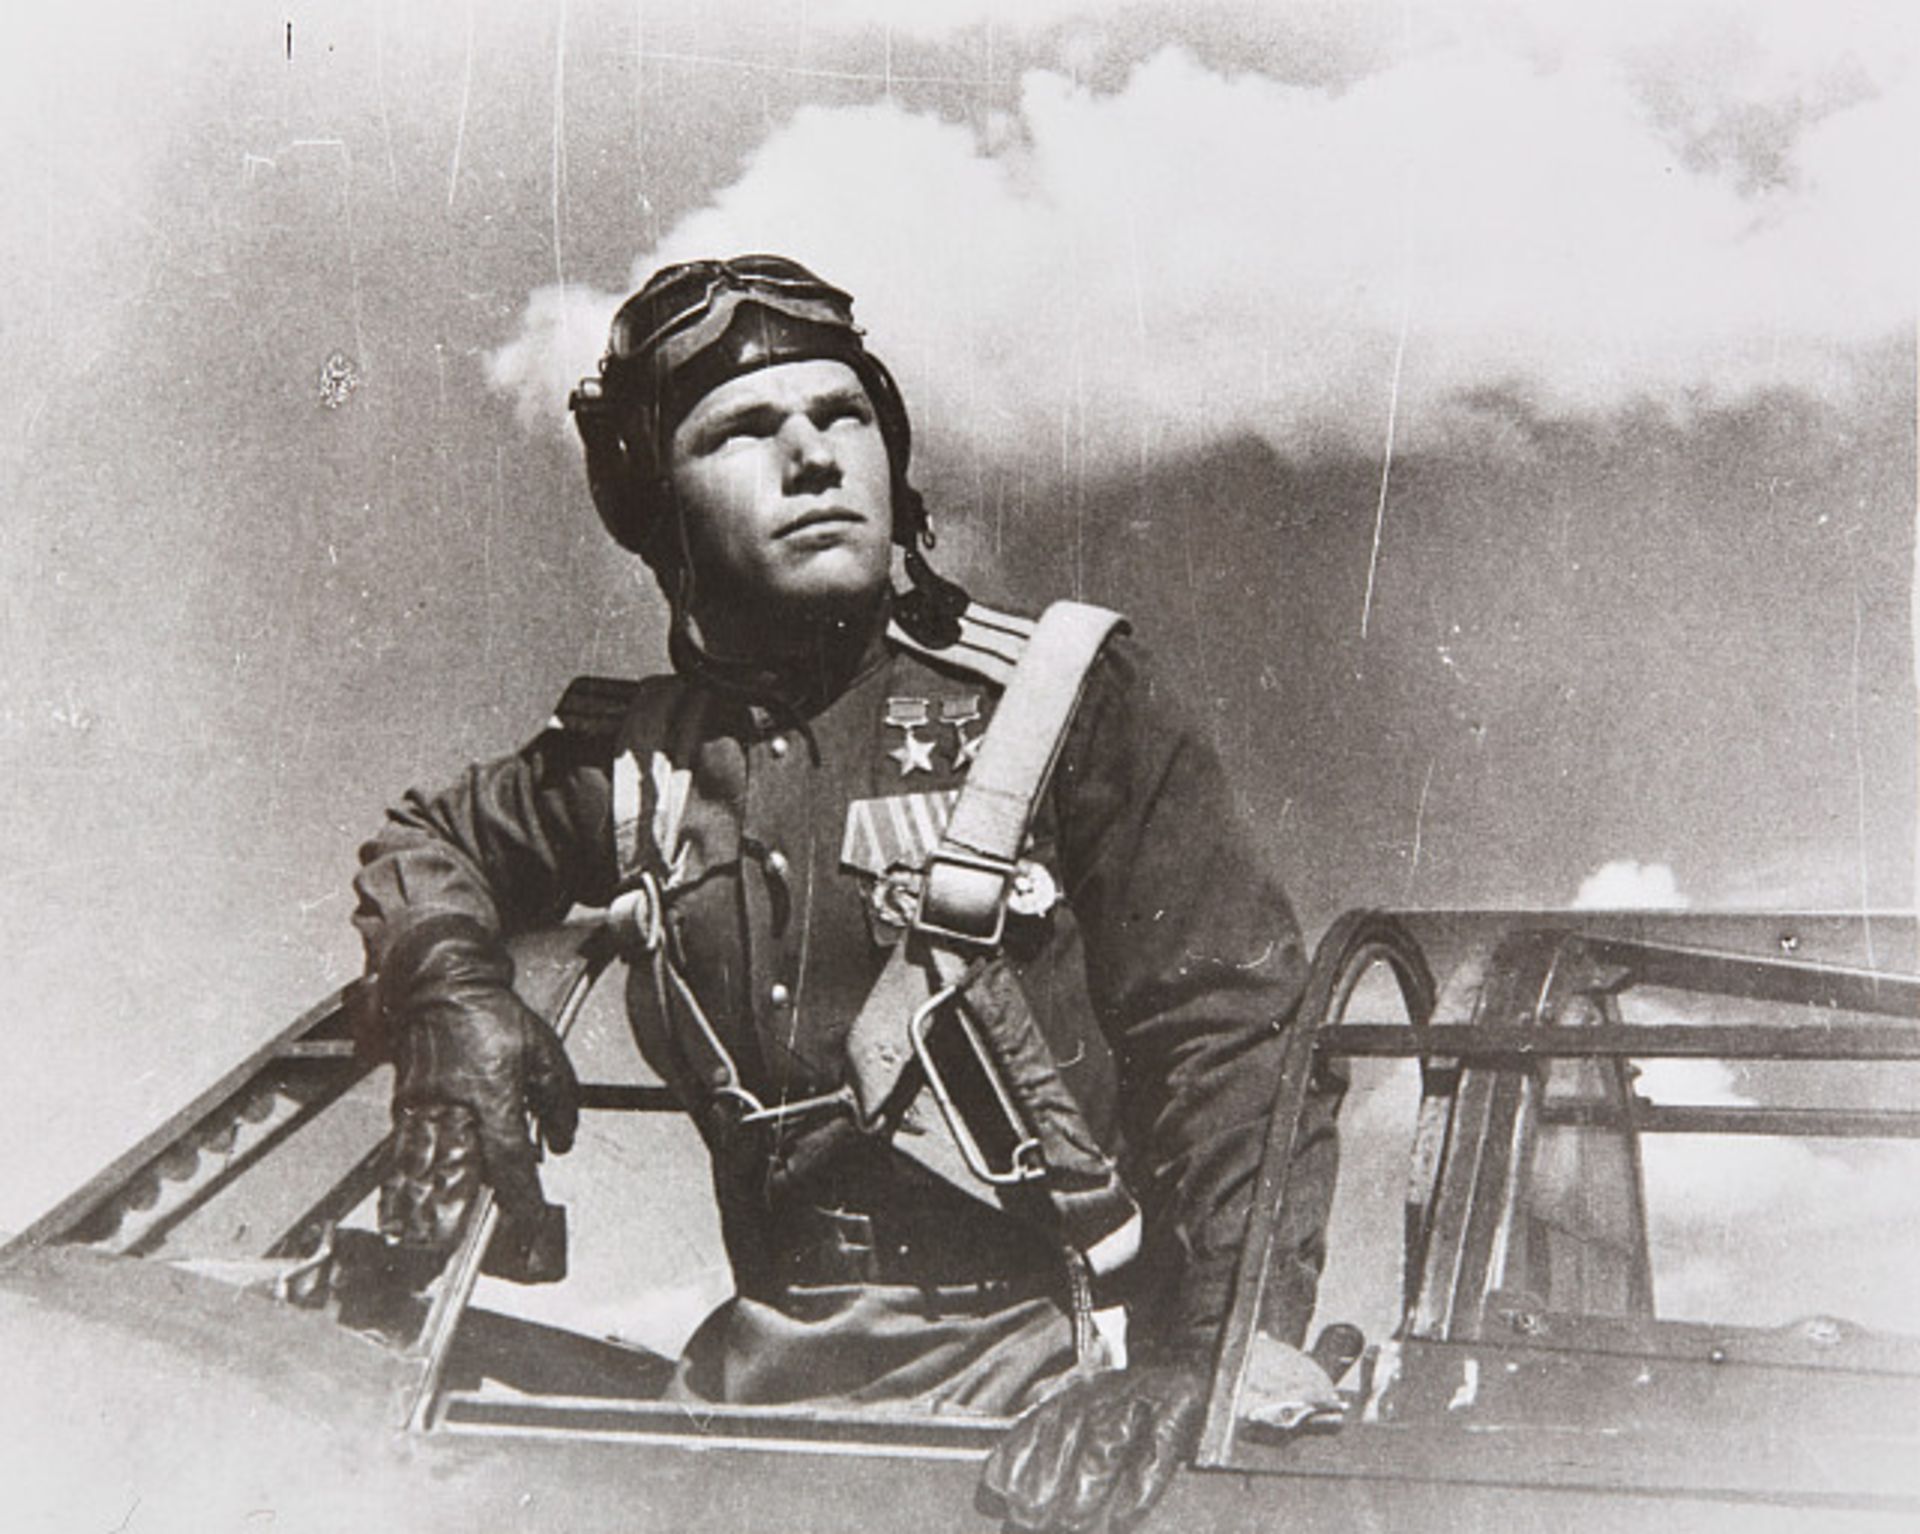 AUSLÄNDISCHE ORDEN UND EHRENZEICHEN - SOWJETUNION : Dokumentennachlass des sowjetischen Jagdfliegers - Image 4 of 22